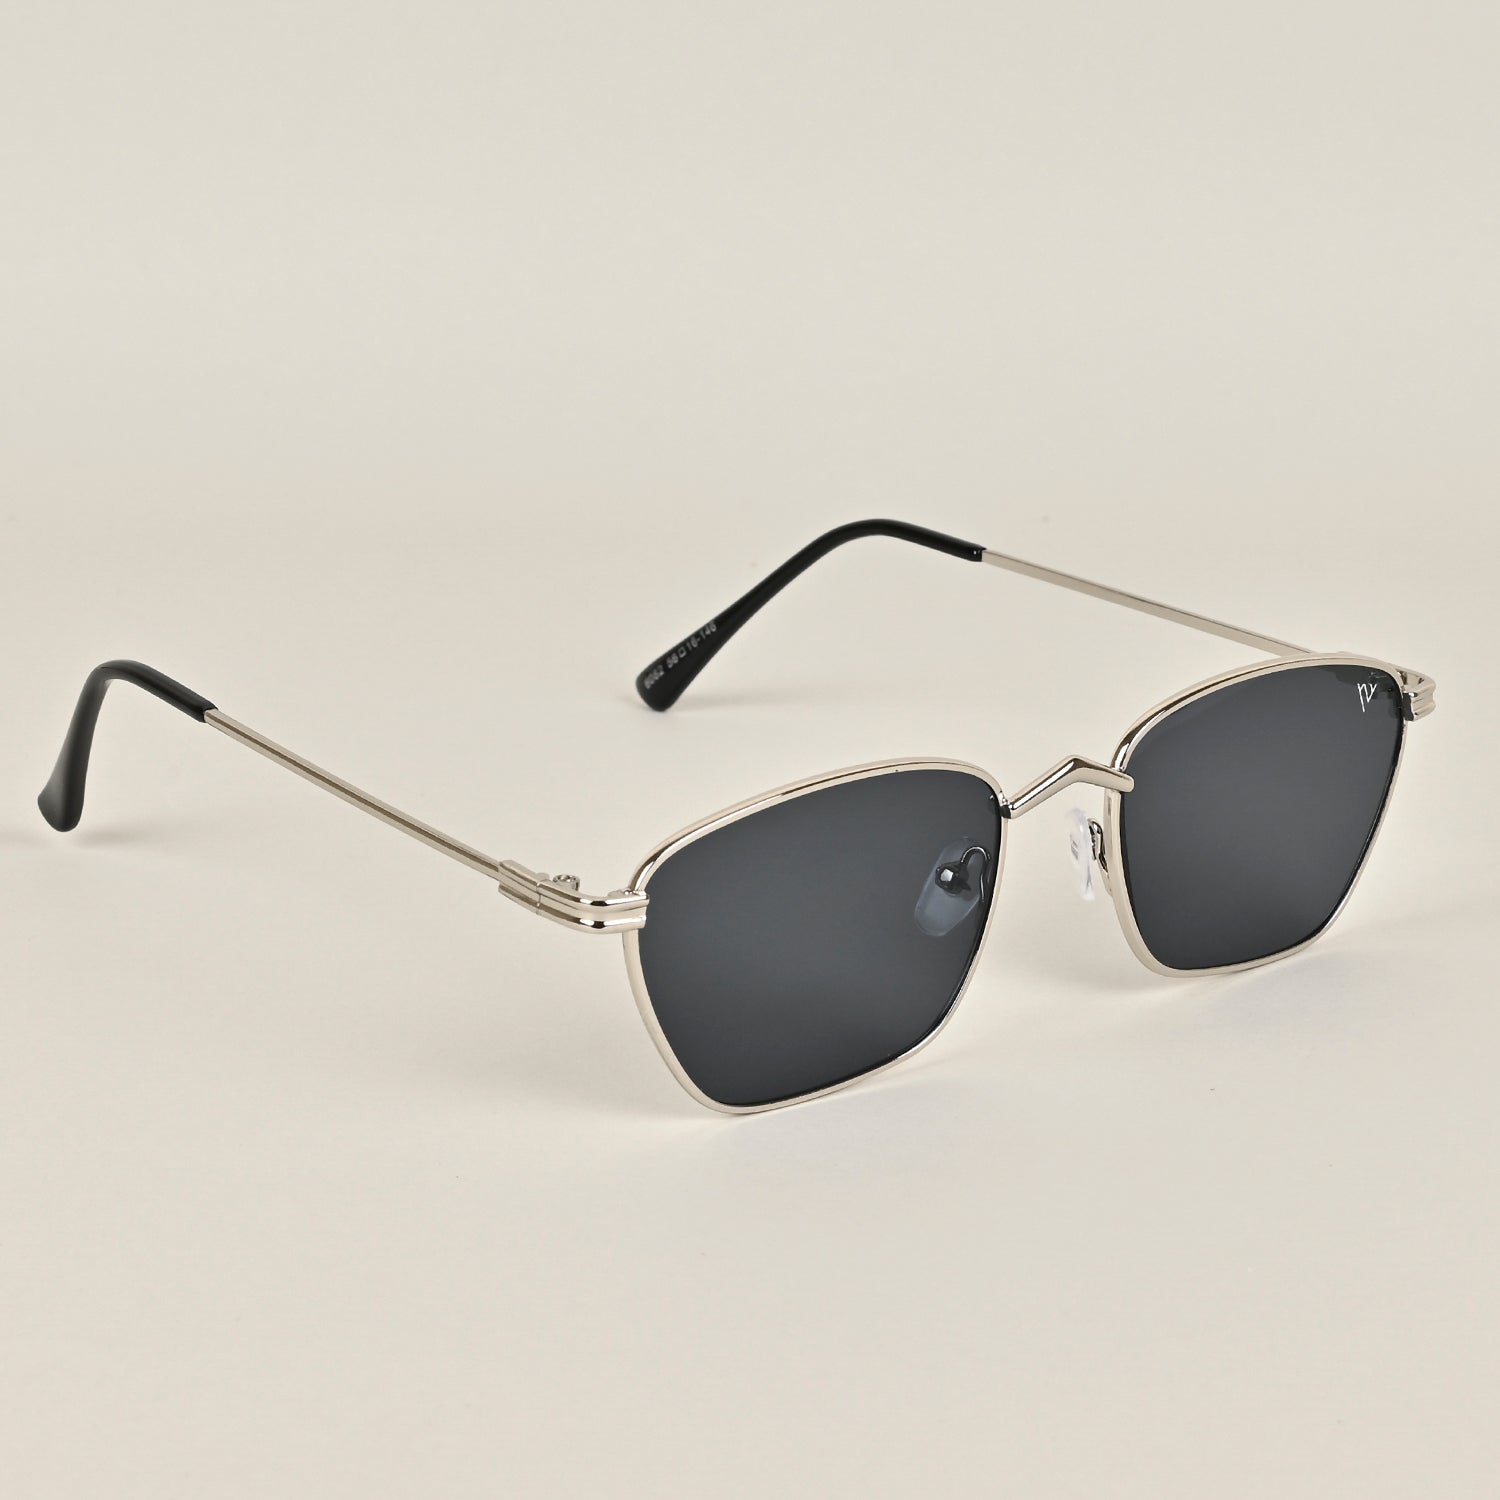 Voyage Black Silver Retro Square Sunglasses - MG3456